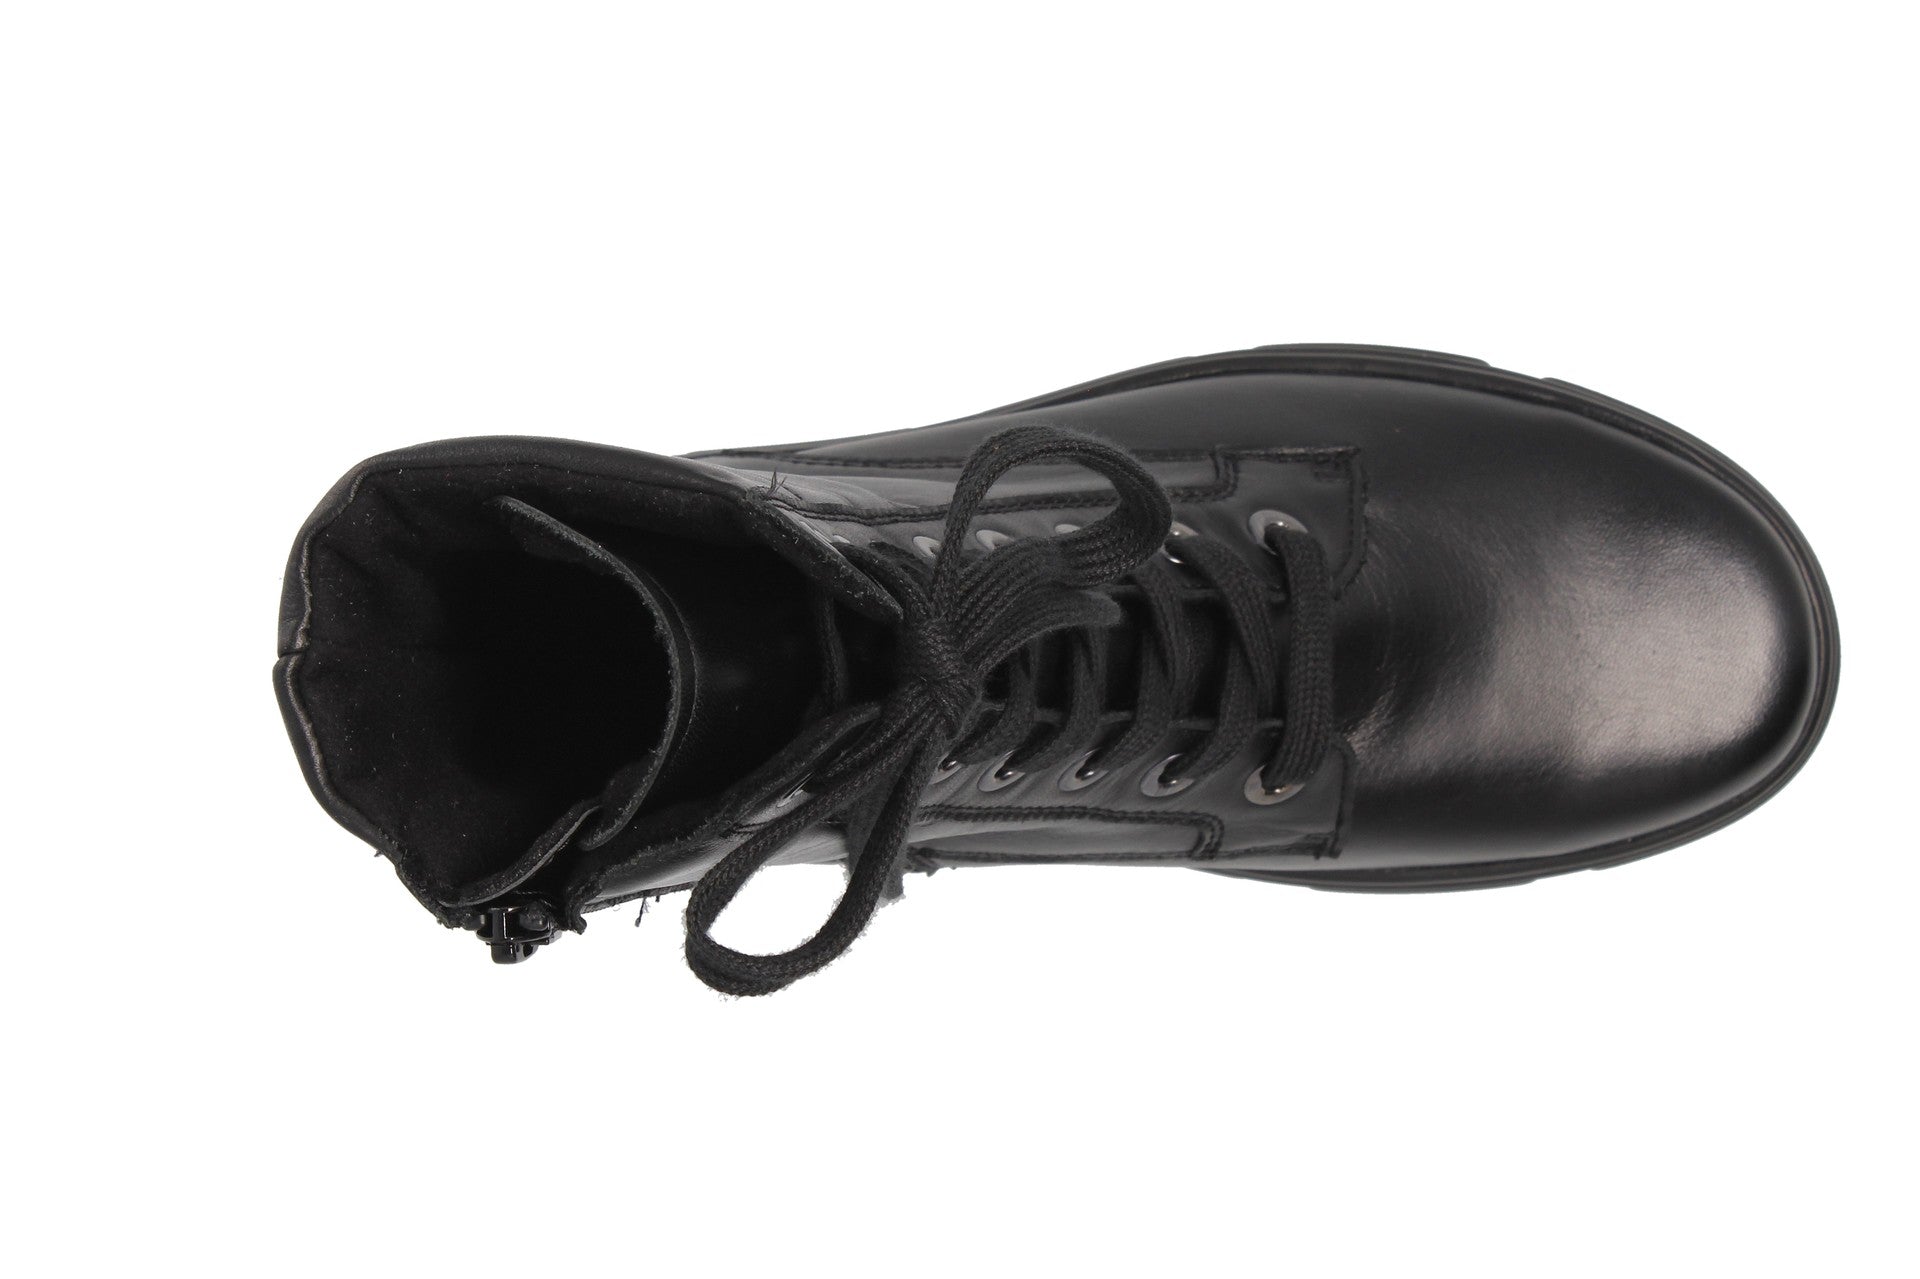 Emilia – black – ankle boots